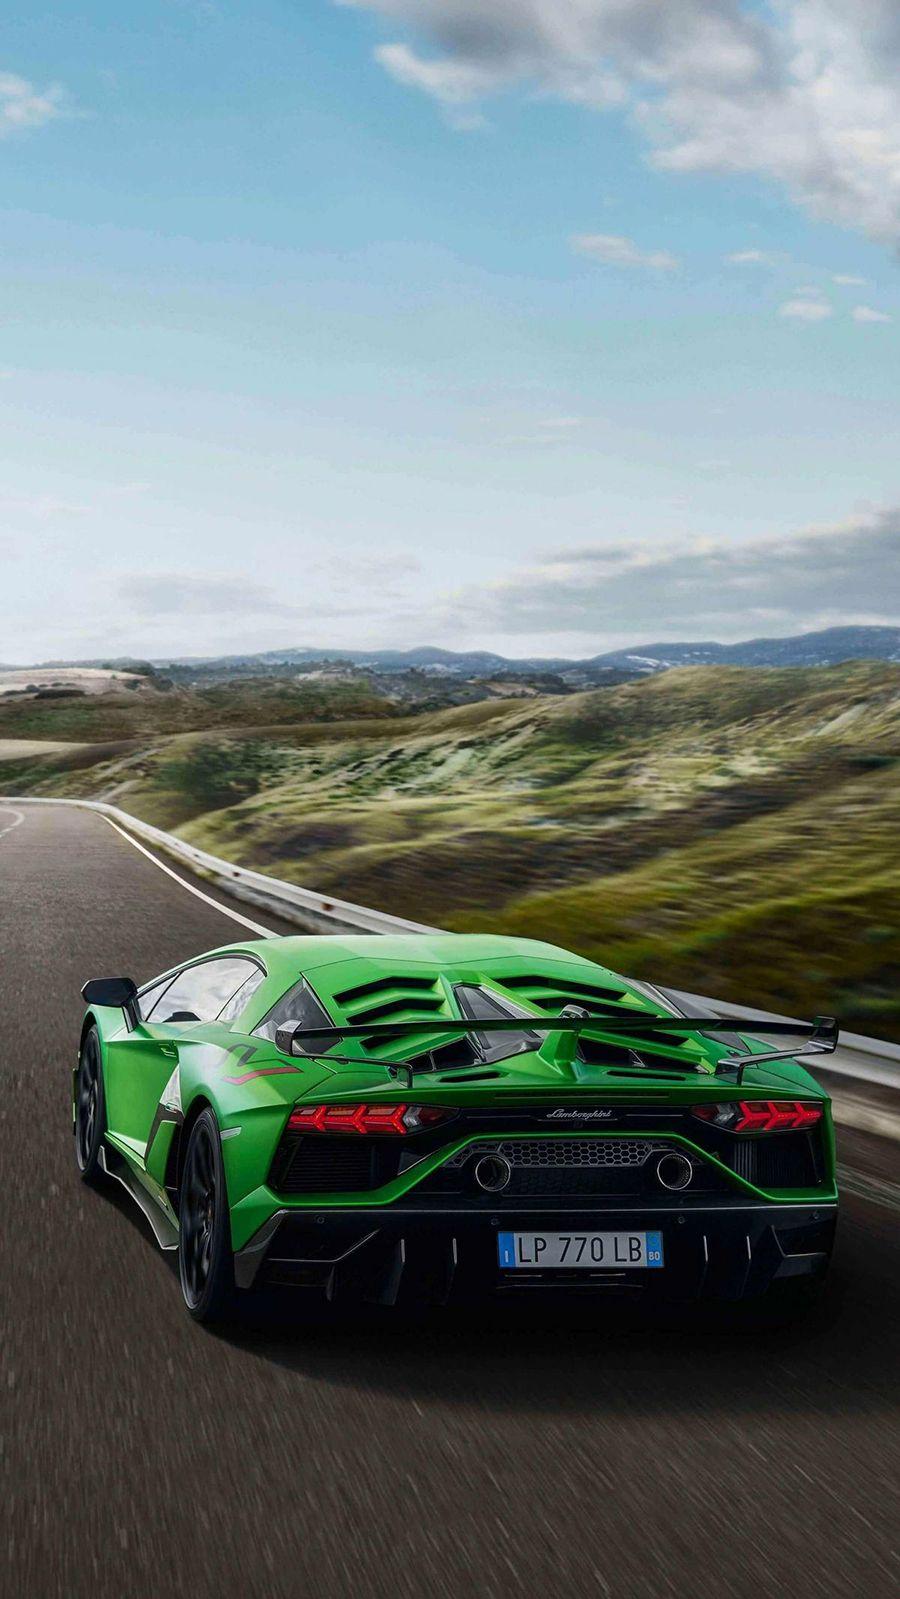 Lamborghini Wallpaper For iPhone And